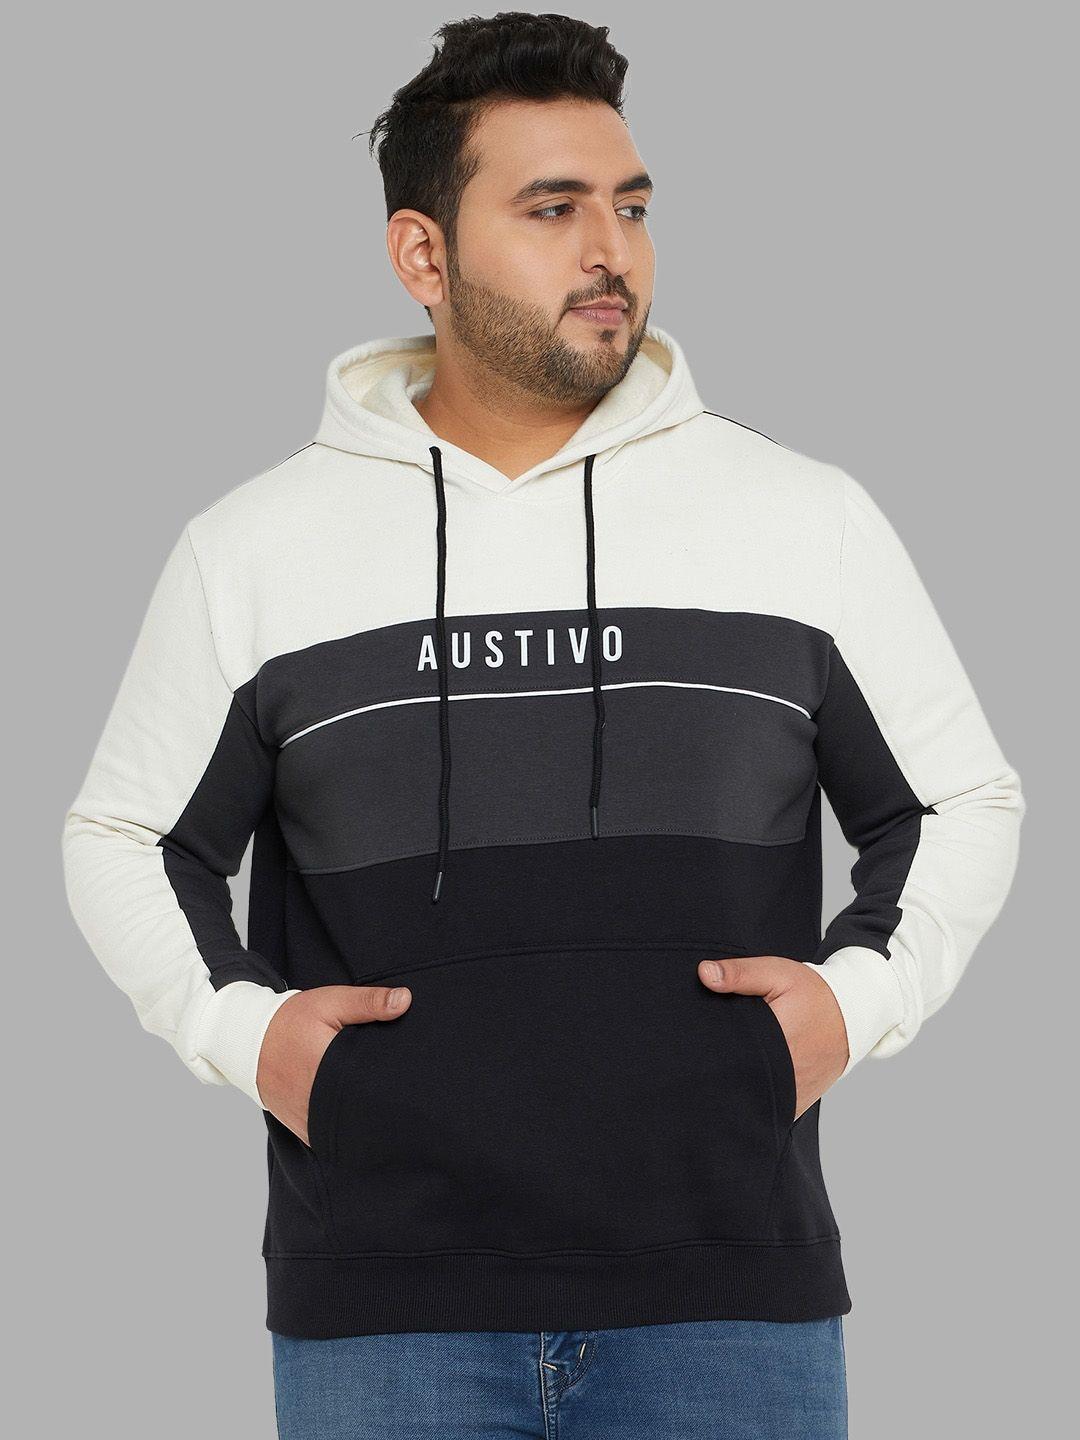 austivo-colourblocked-hooded-pullover